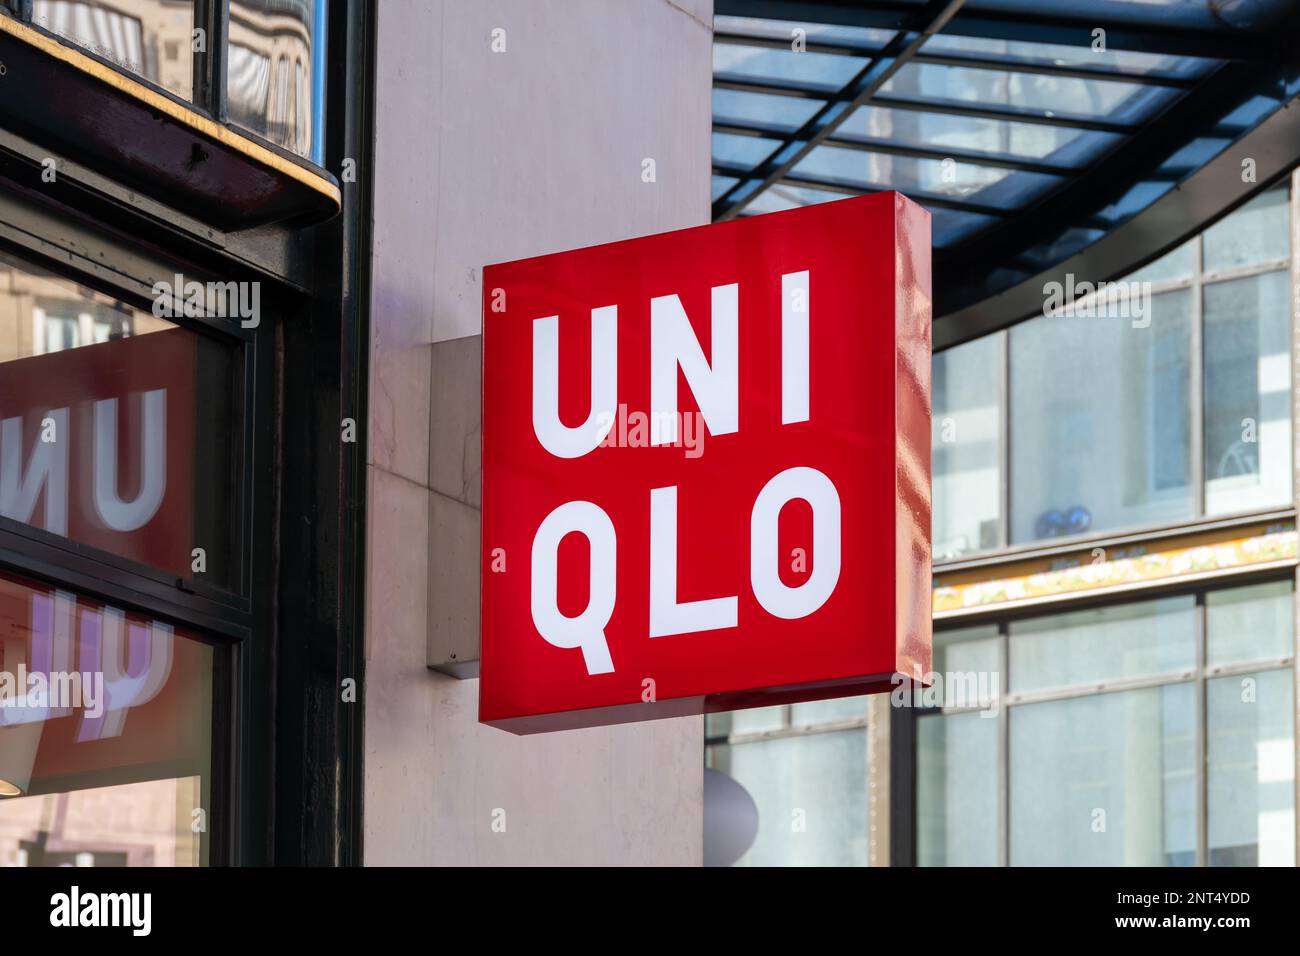 Handelszeichen und Logo eines Uniqlo-Geschäfts, einer Handelsmarke von Fast Retailing, einem japanischen Bekleidungsunternehmen aus Design, Herstellung und Vertrieb von Bekleidung Stockfoto